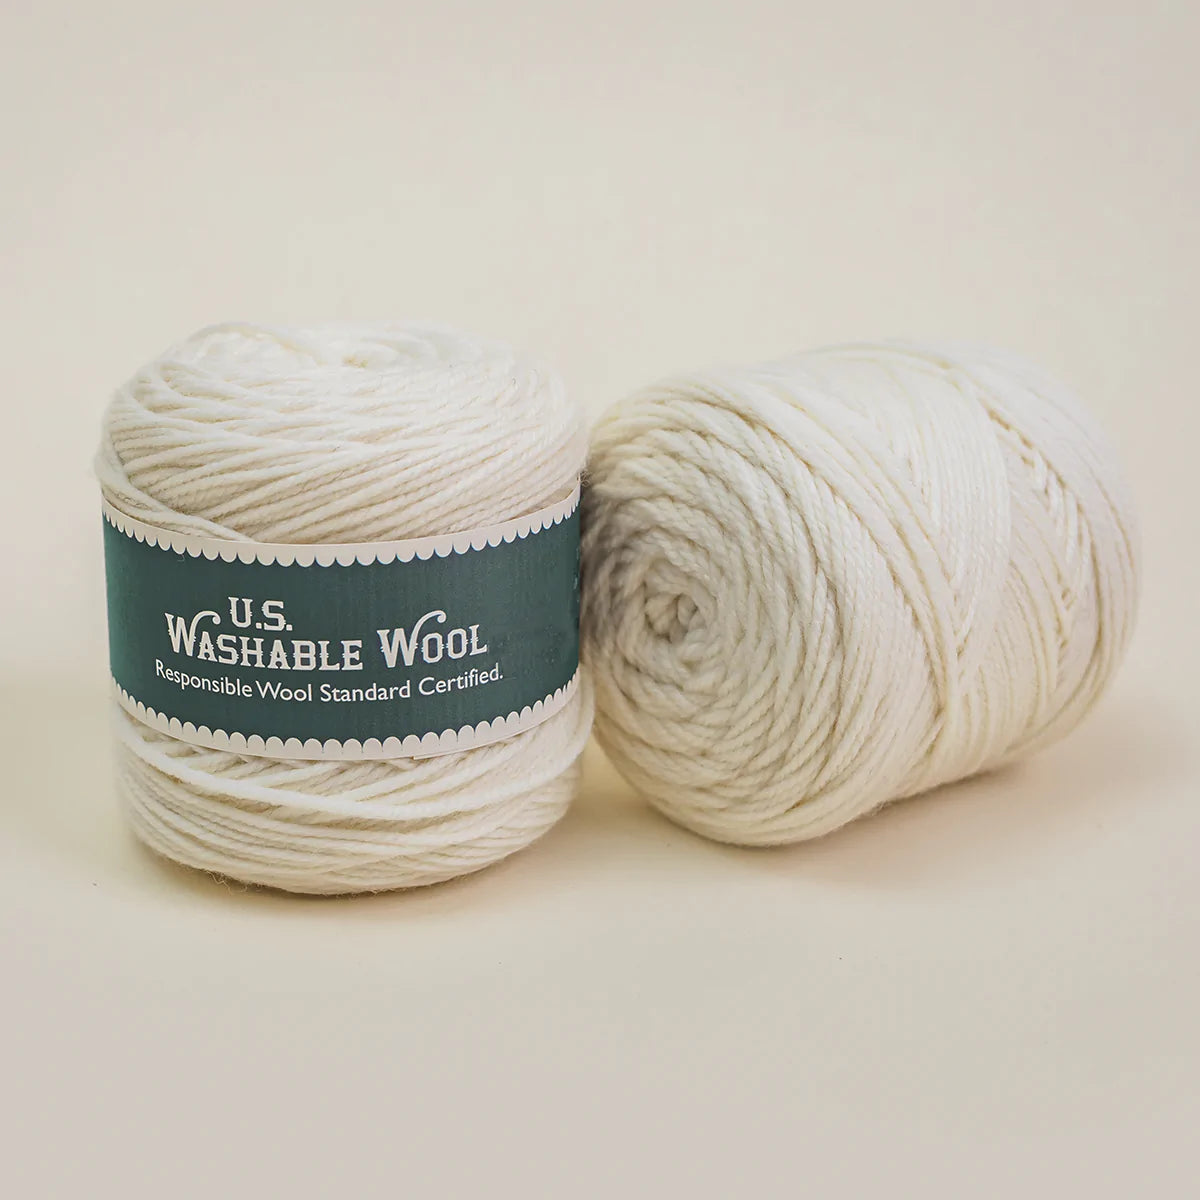 U.S. Shaniko Washable Wool